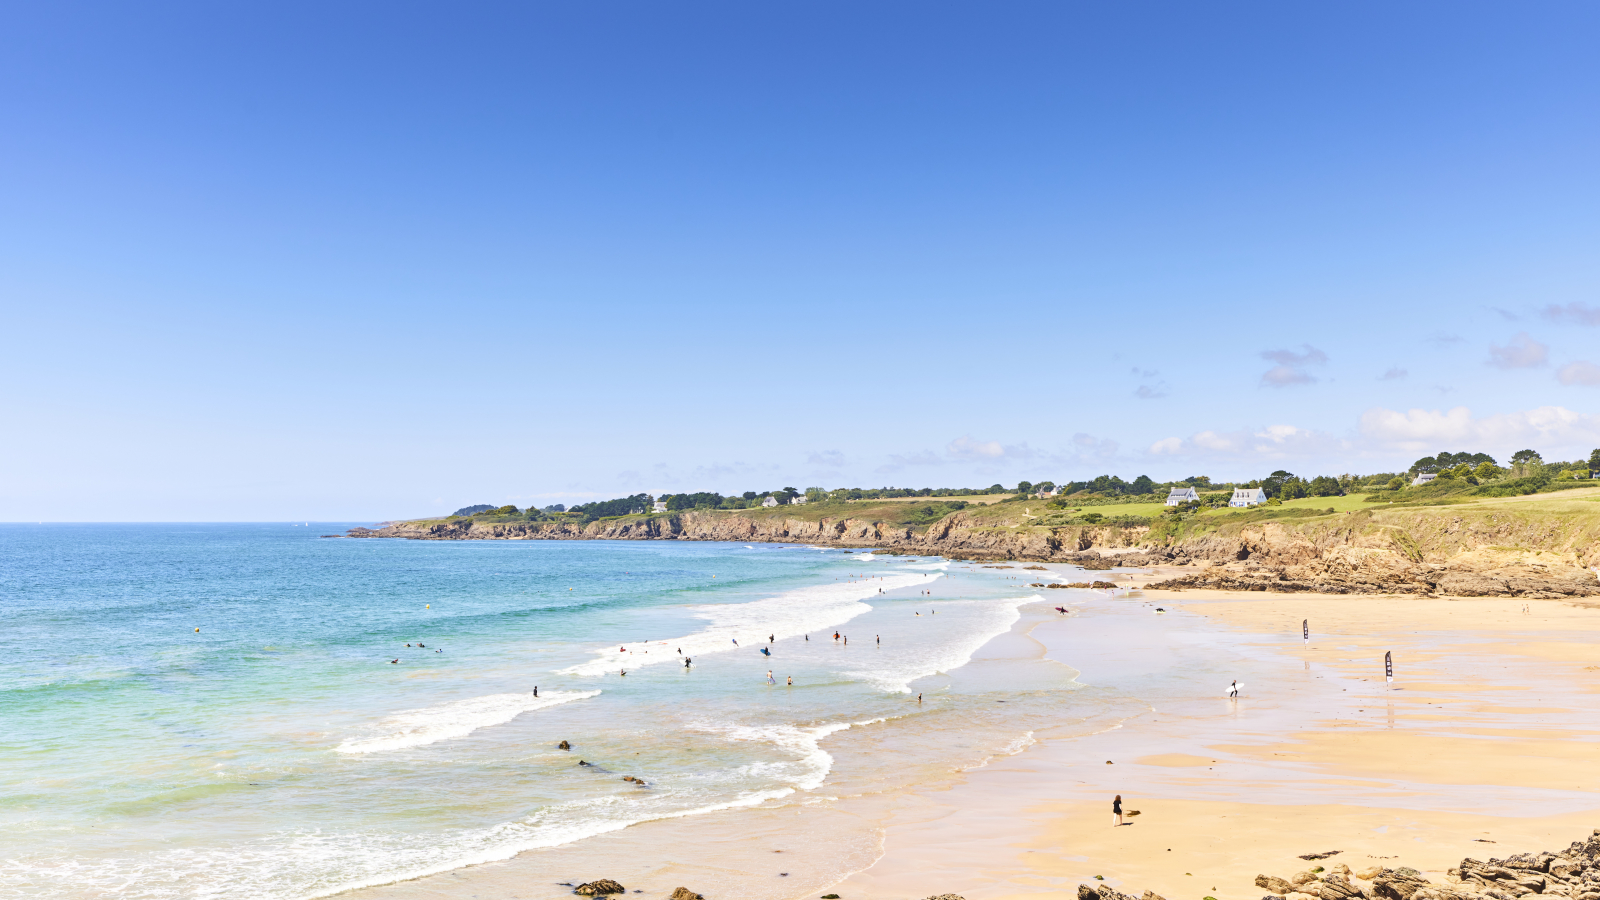 La plage du Kérou au pouldu dans le Finistère Sud est une plage prisée pour le surf autant que pour la baignade.